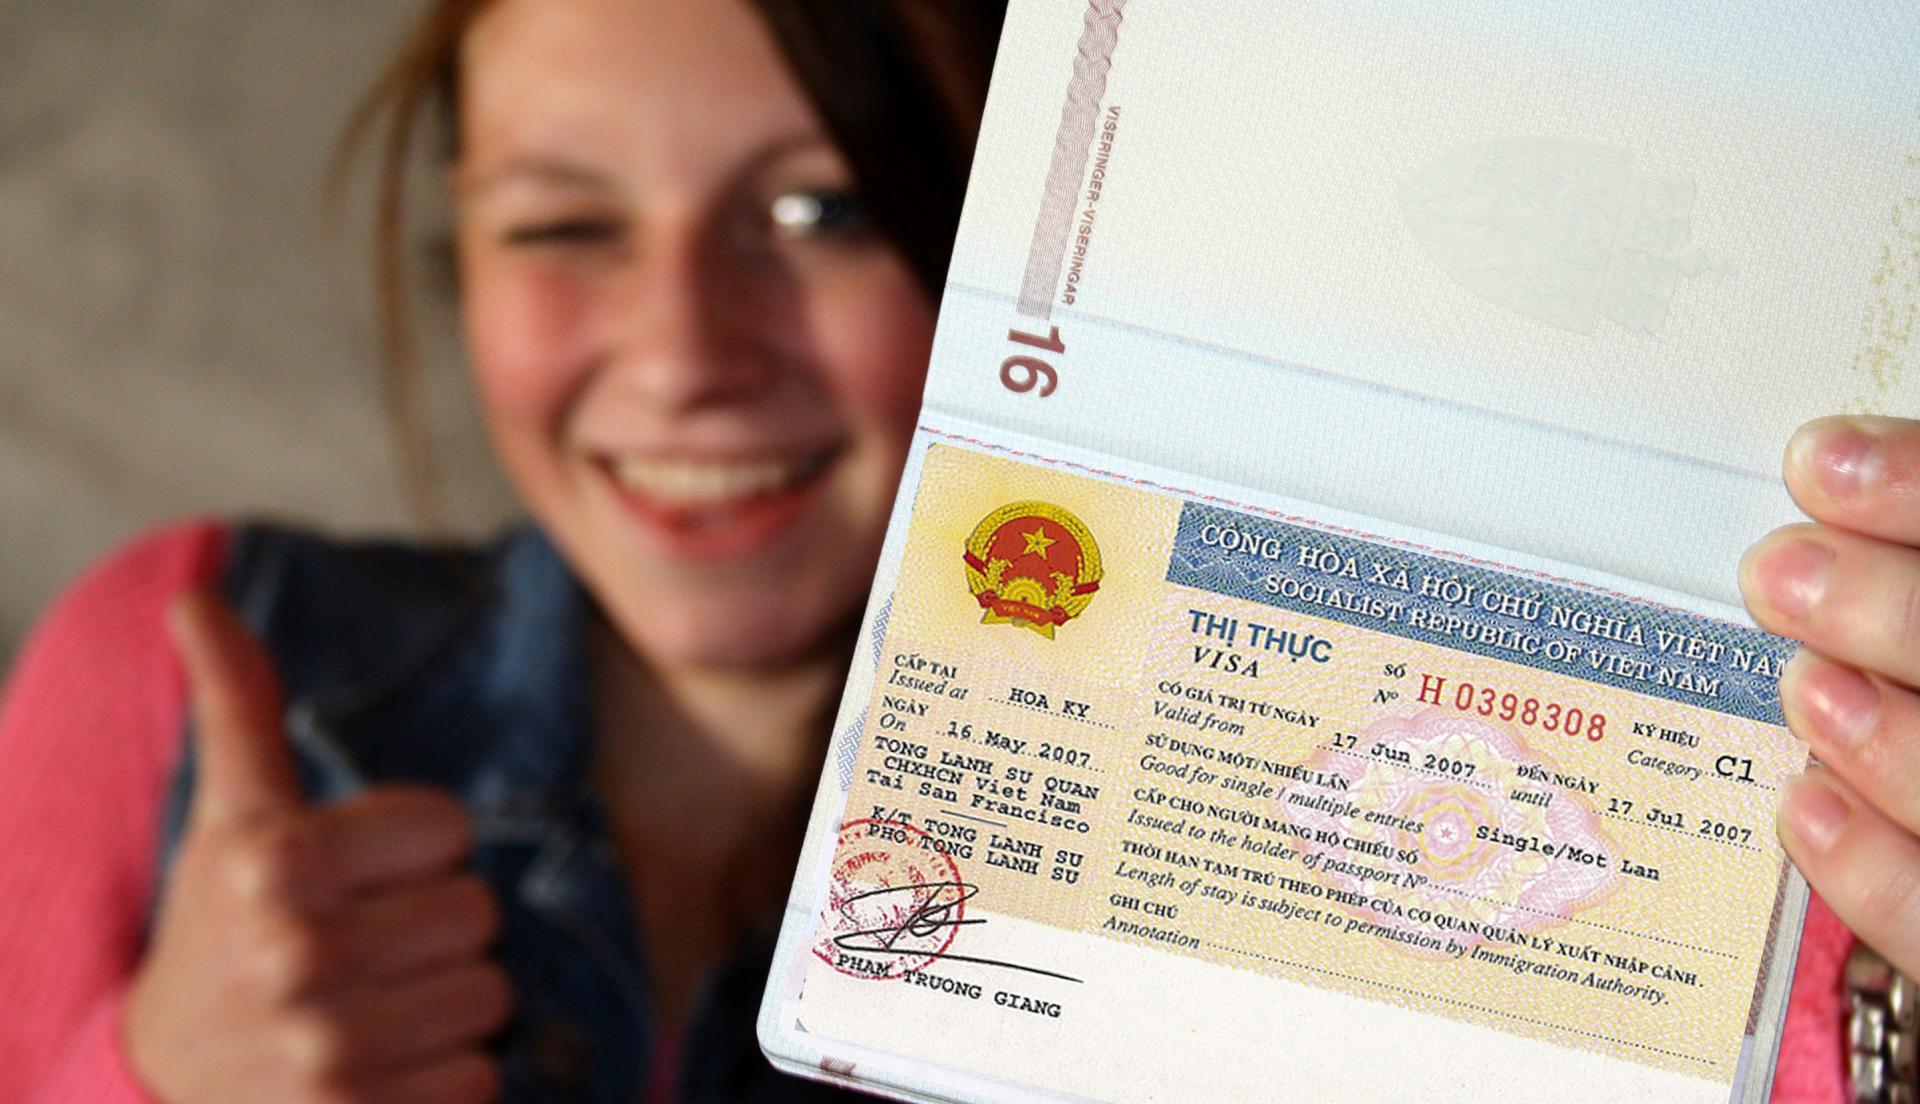 Продление визы во Вьетнаме станет доступно без выезда из страны